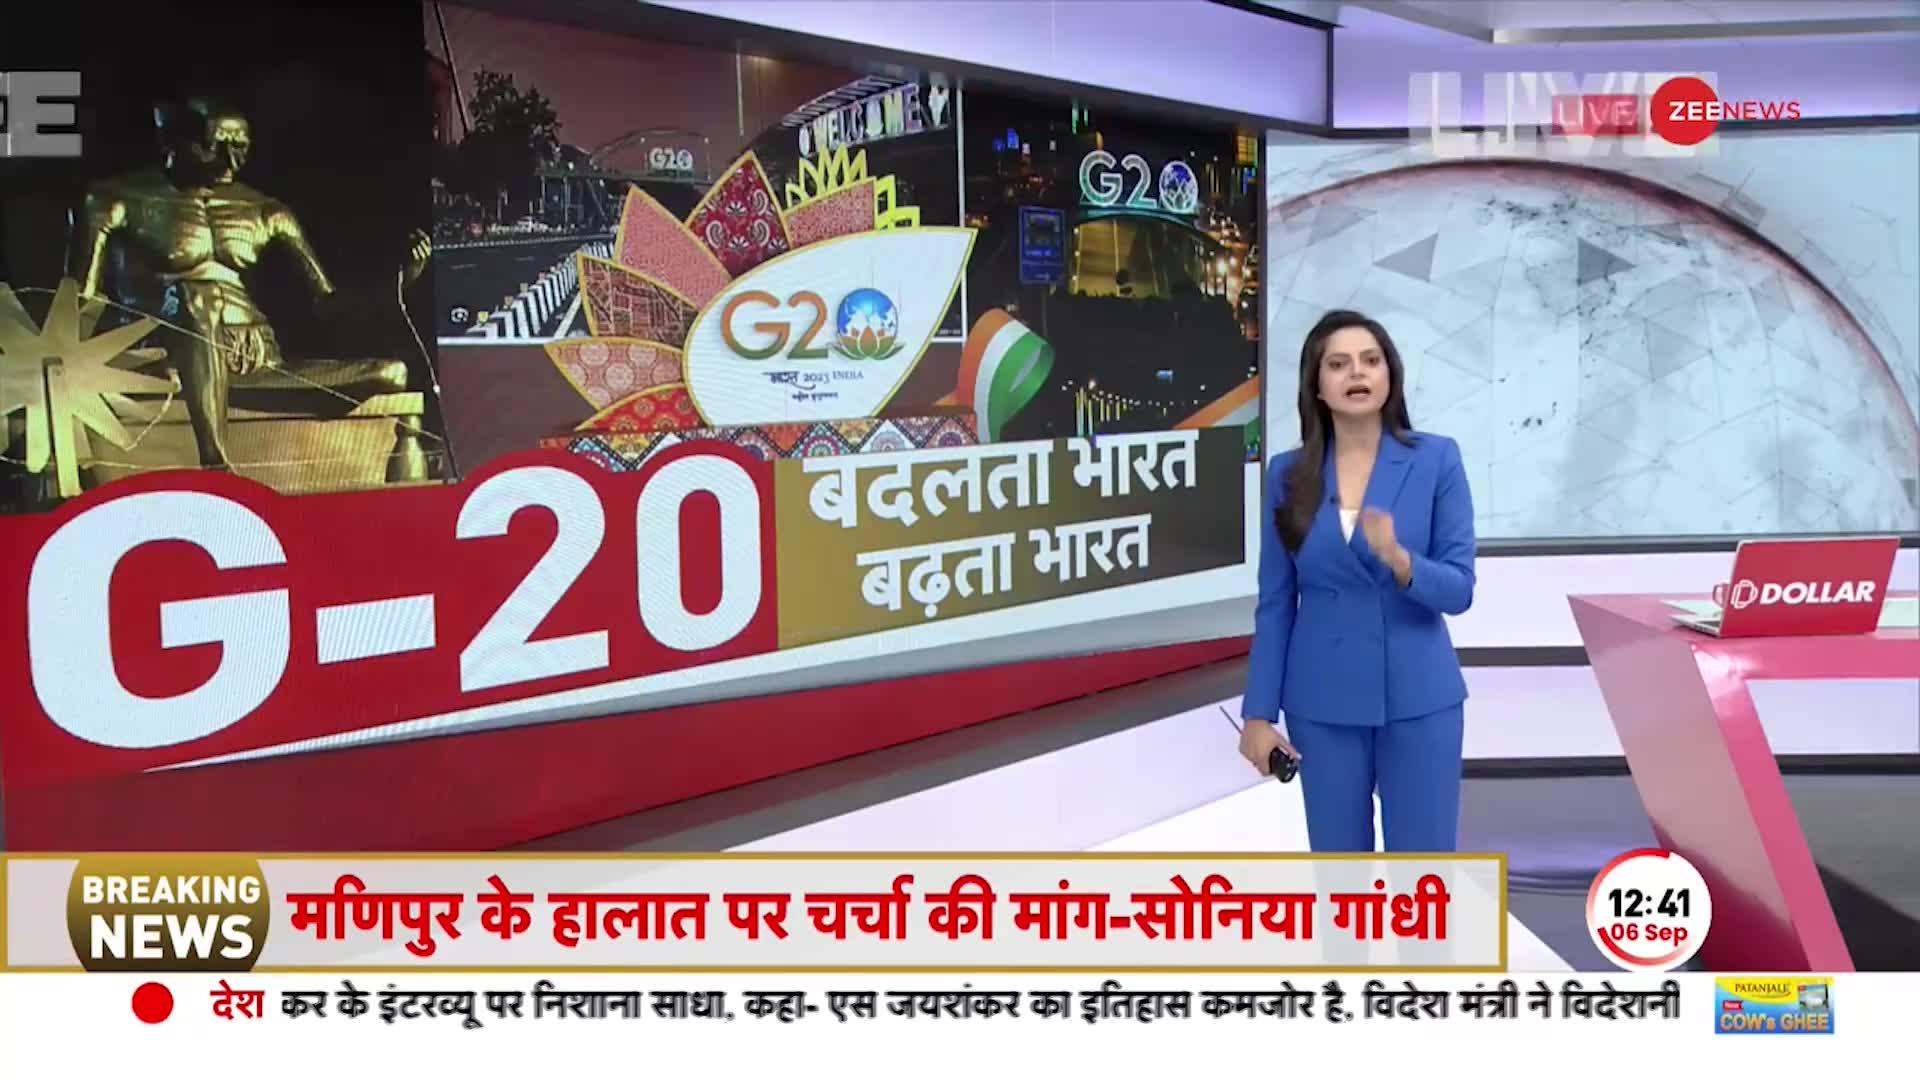 VK Singh Exclusive: G20 की तैयारियों को लेकर VK Singh से बातचीत, हमने प्लान करने की कोशिश की है